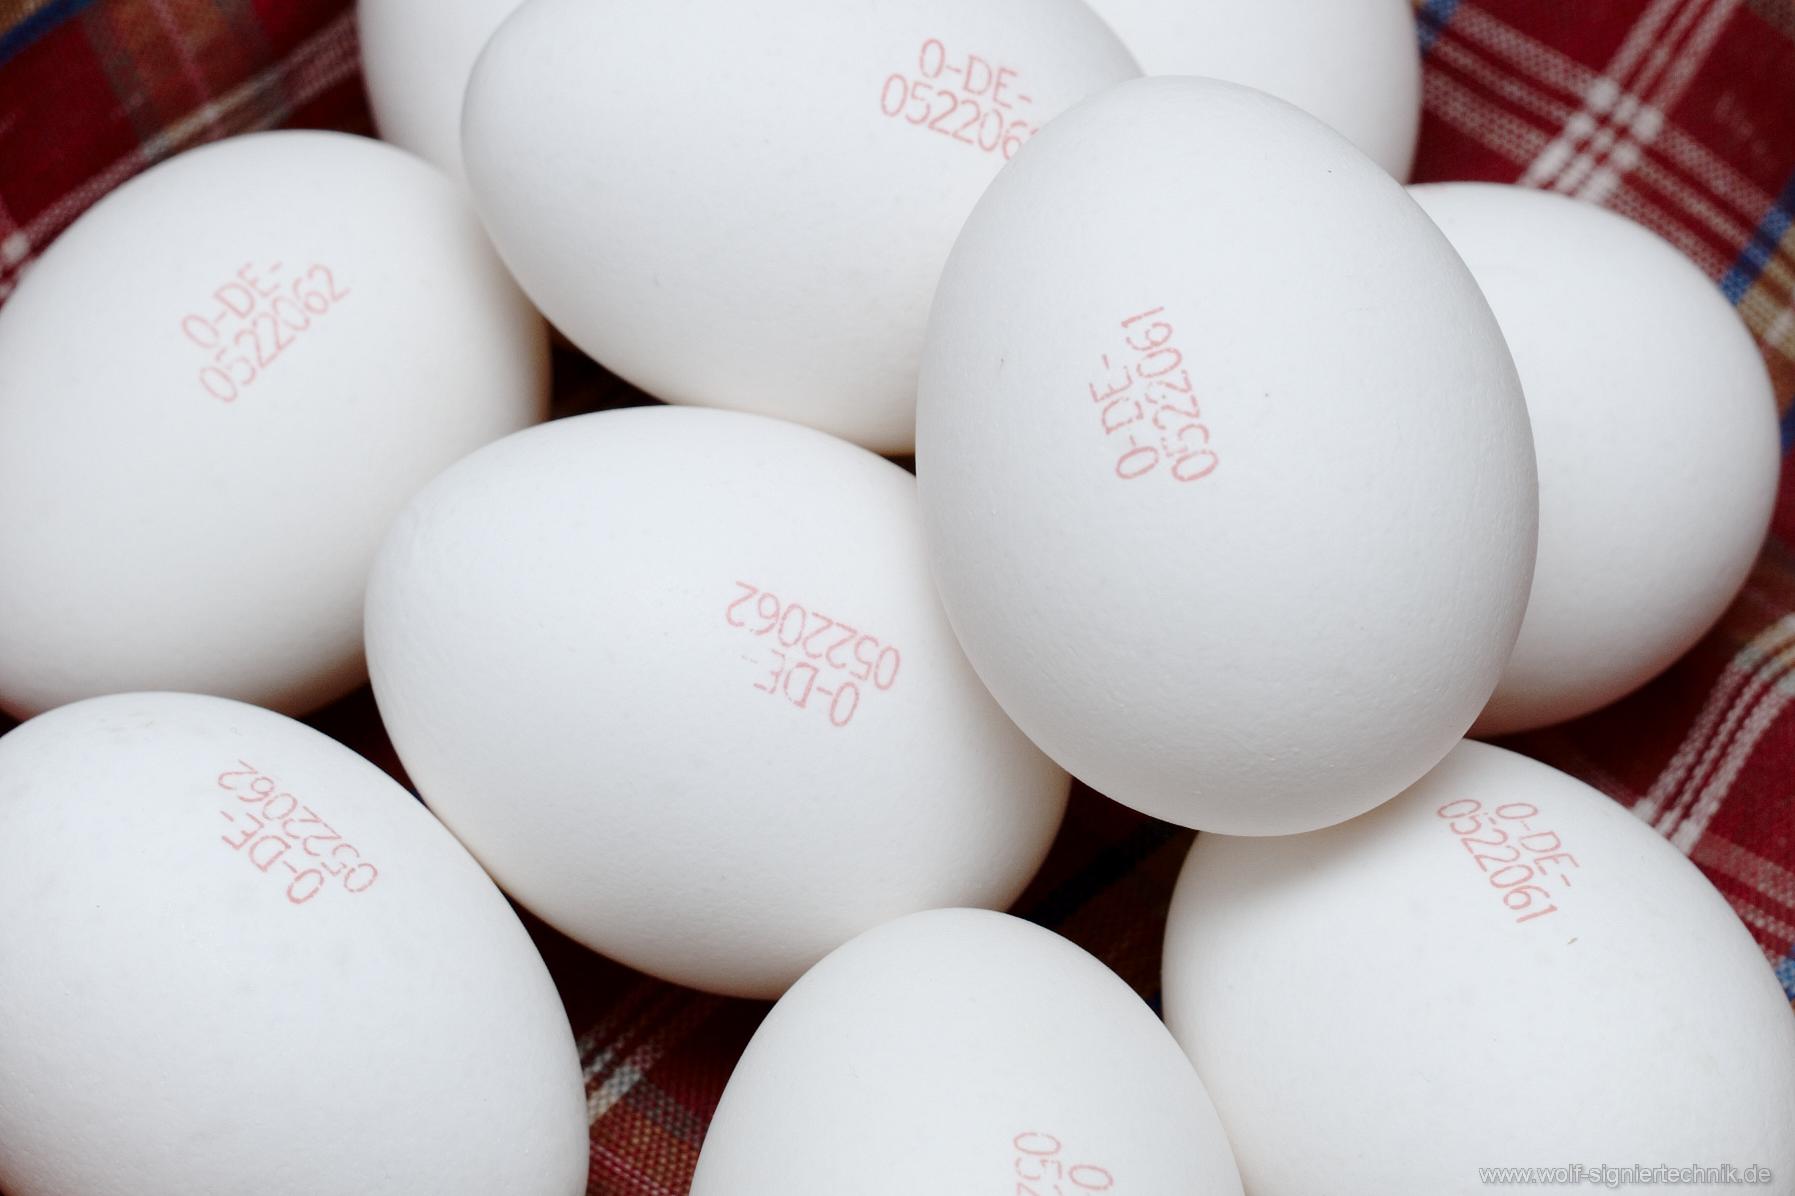 Mit roter Schrift gekennzeichnete weiße Eier aus Siegen-Freudenberg